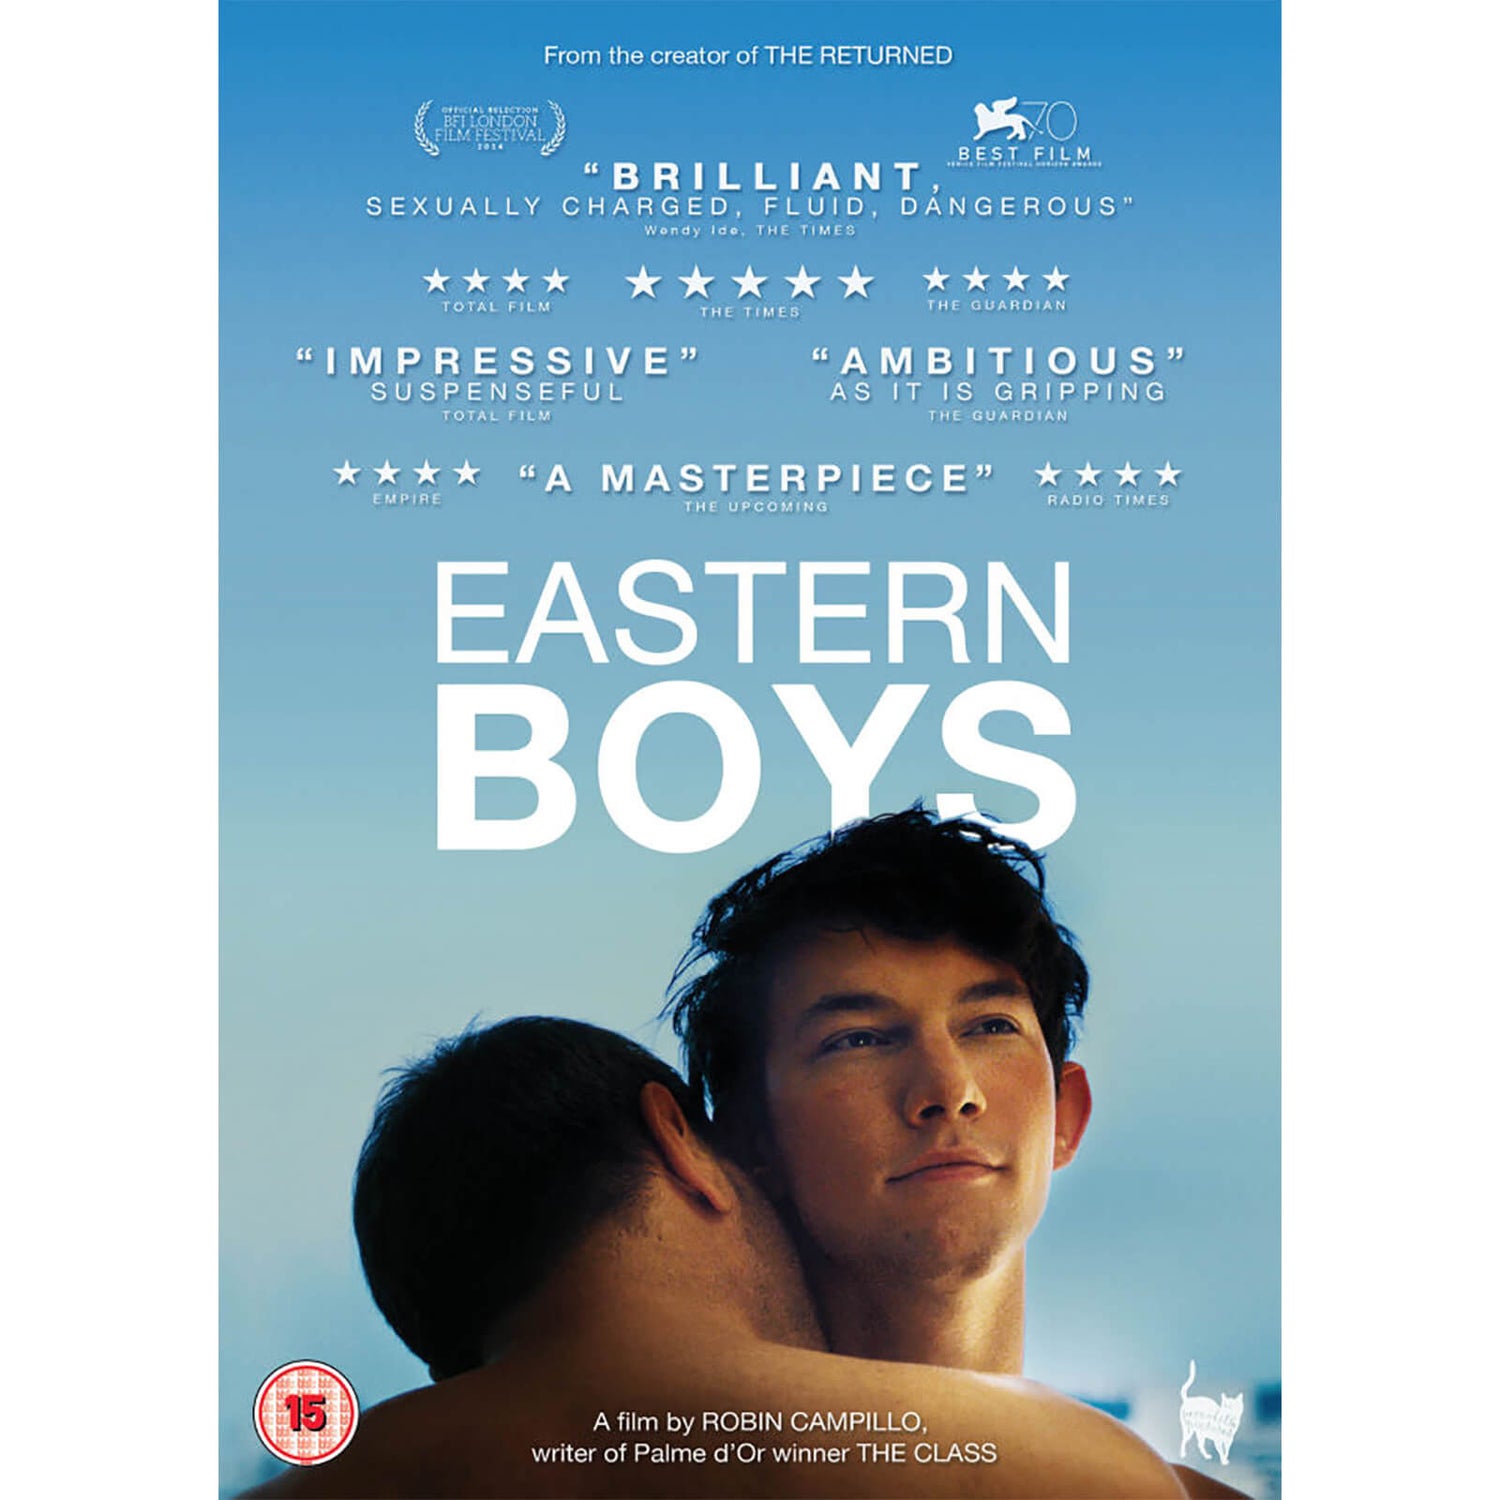 Eastern Boys